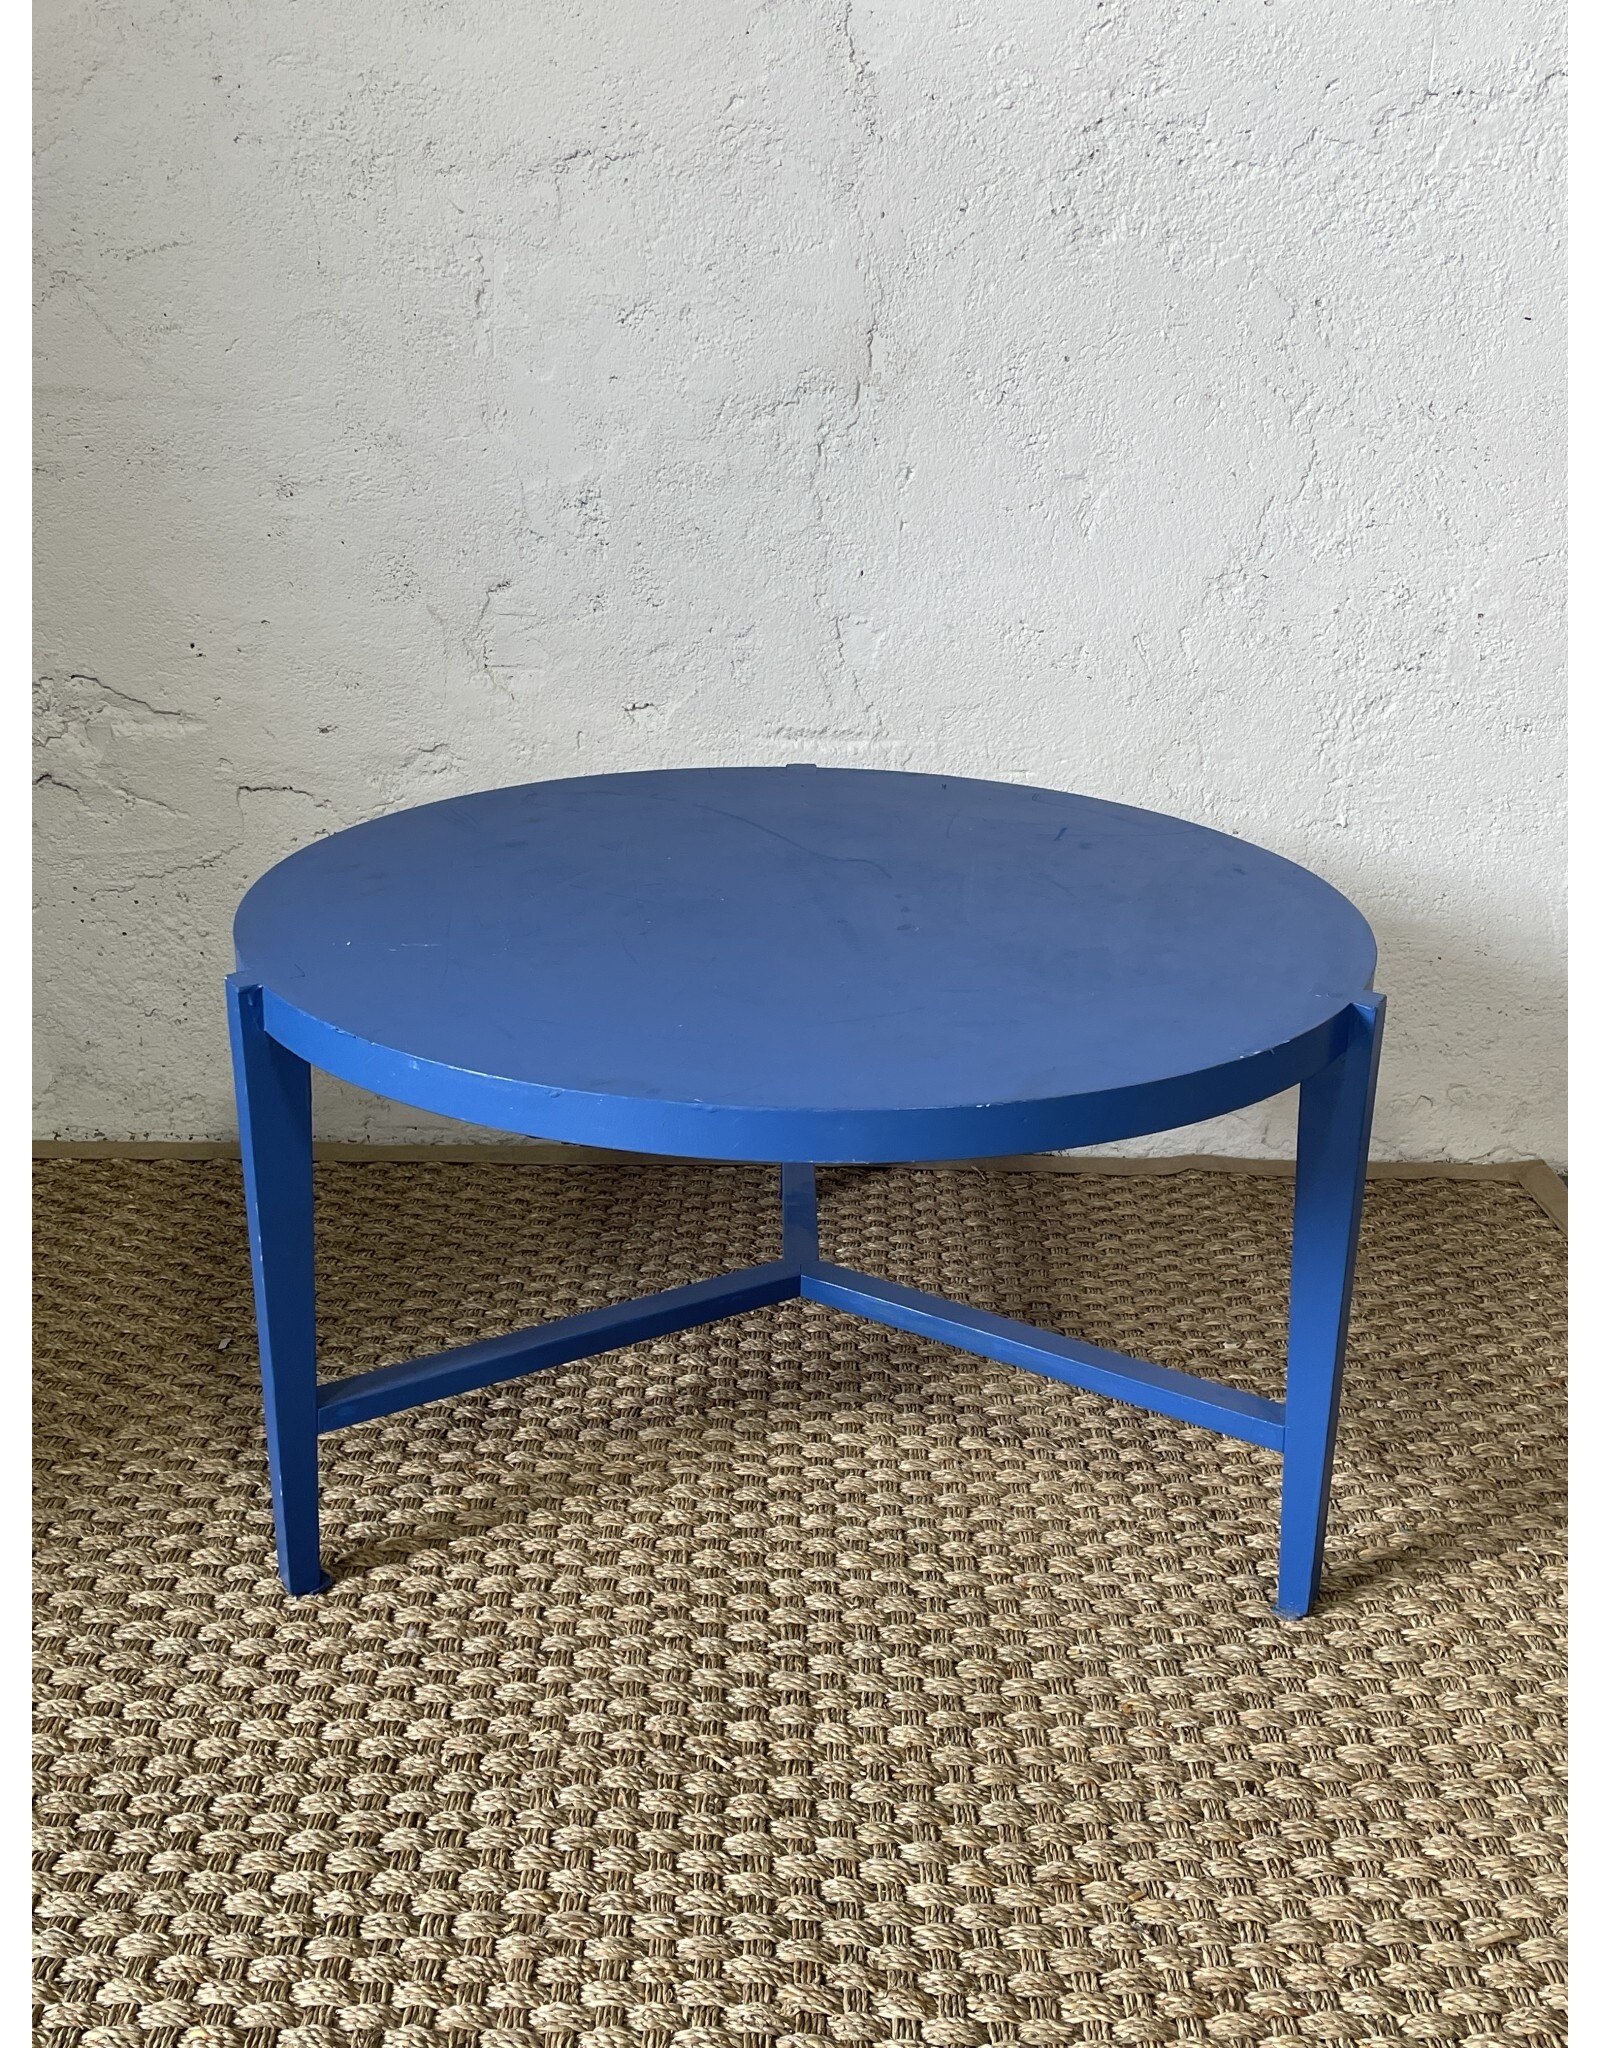 Walker Edison Blue Coffee Table